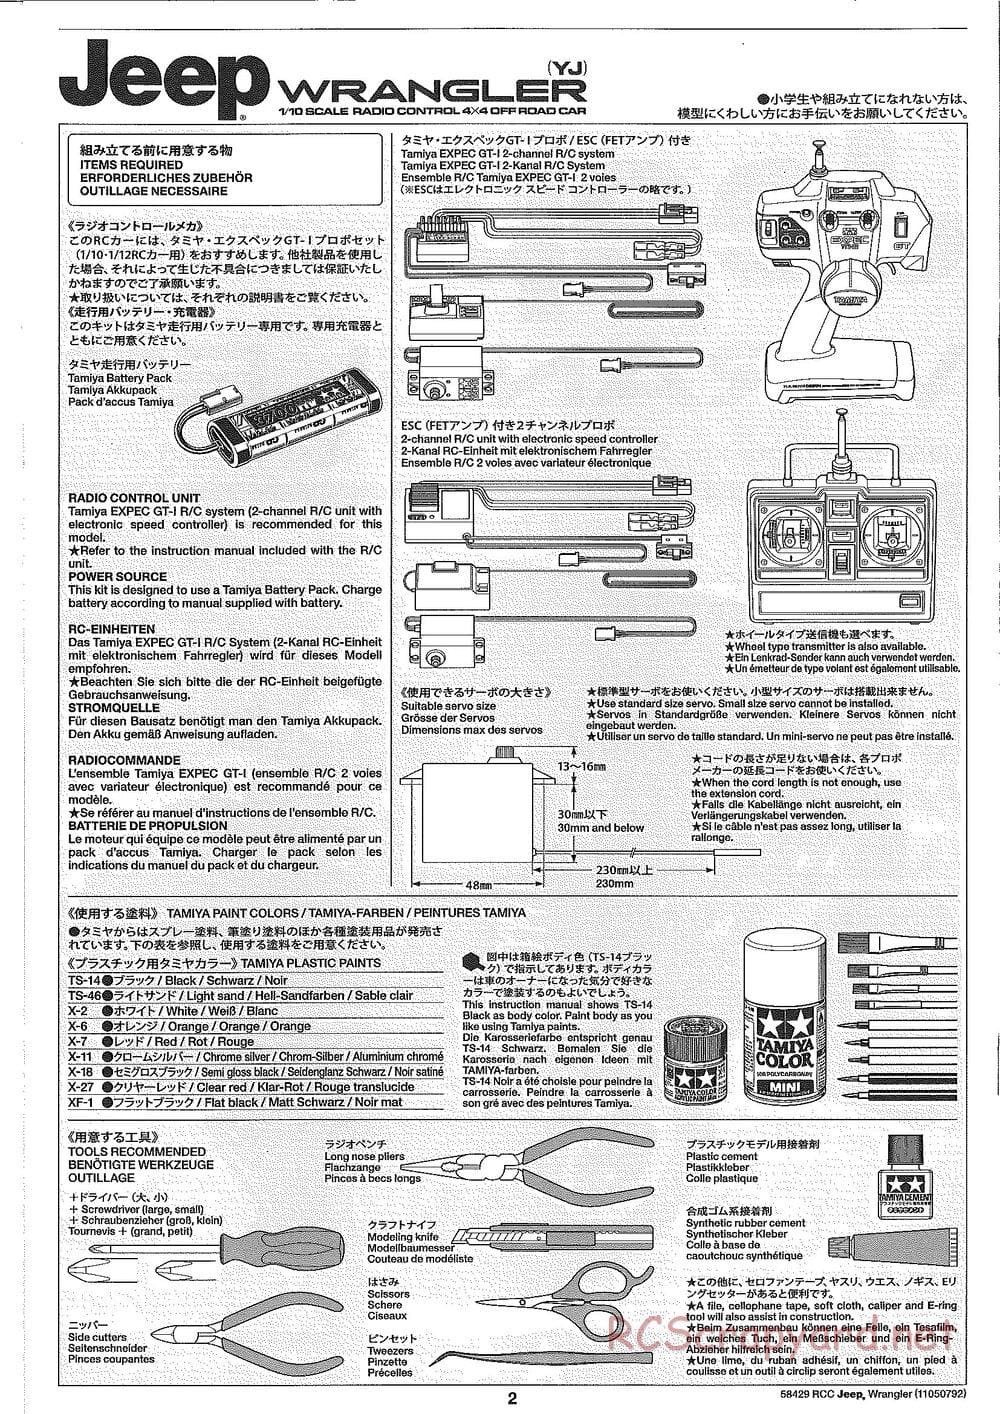 Tamiya - Jeep Wrangler - CR-01 Chassis - Manual - Page 2